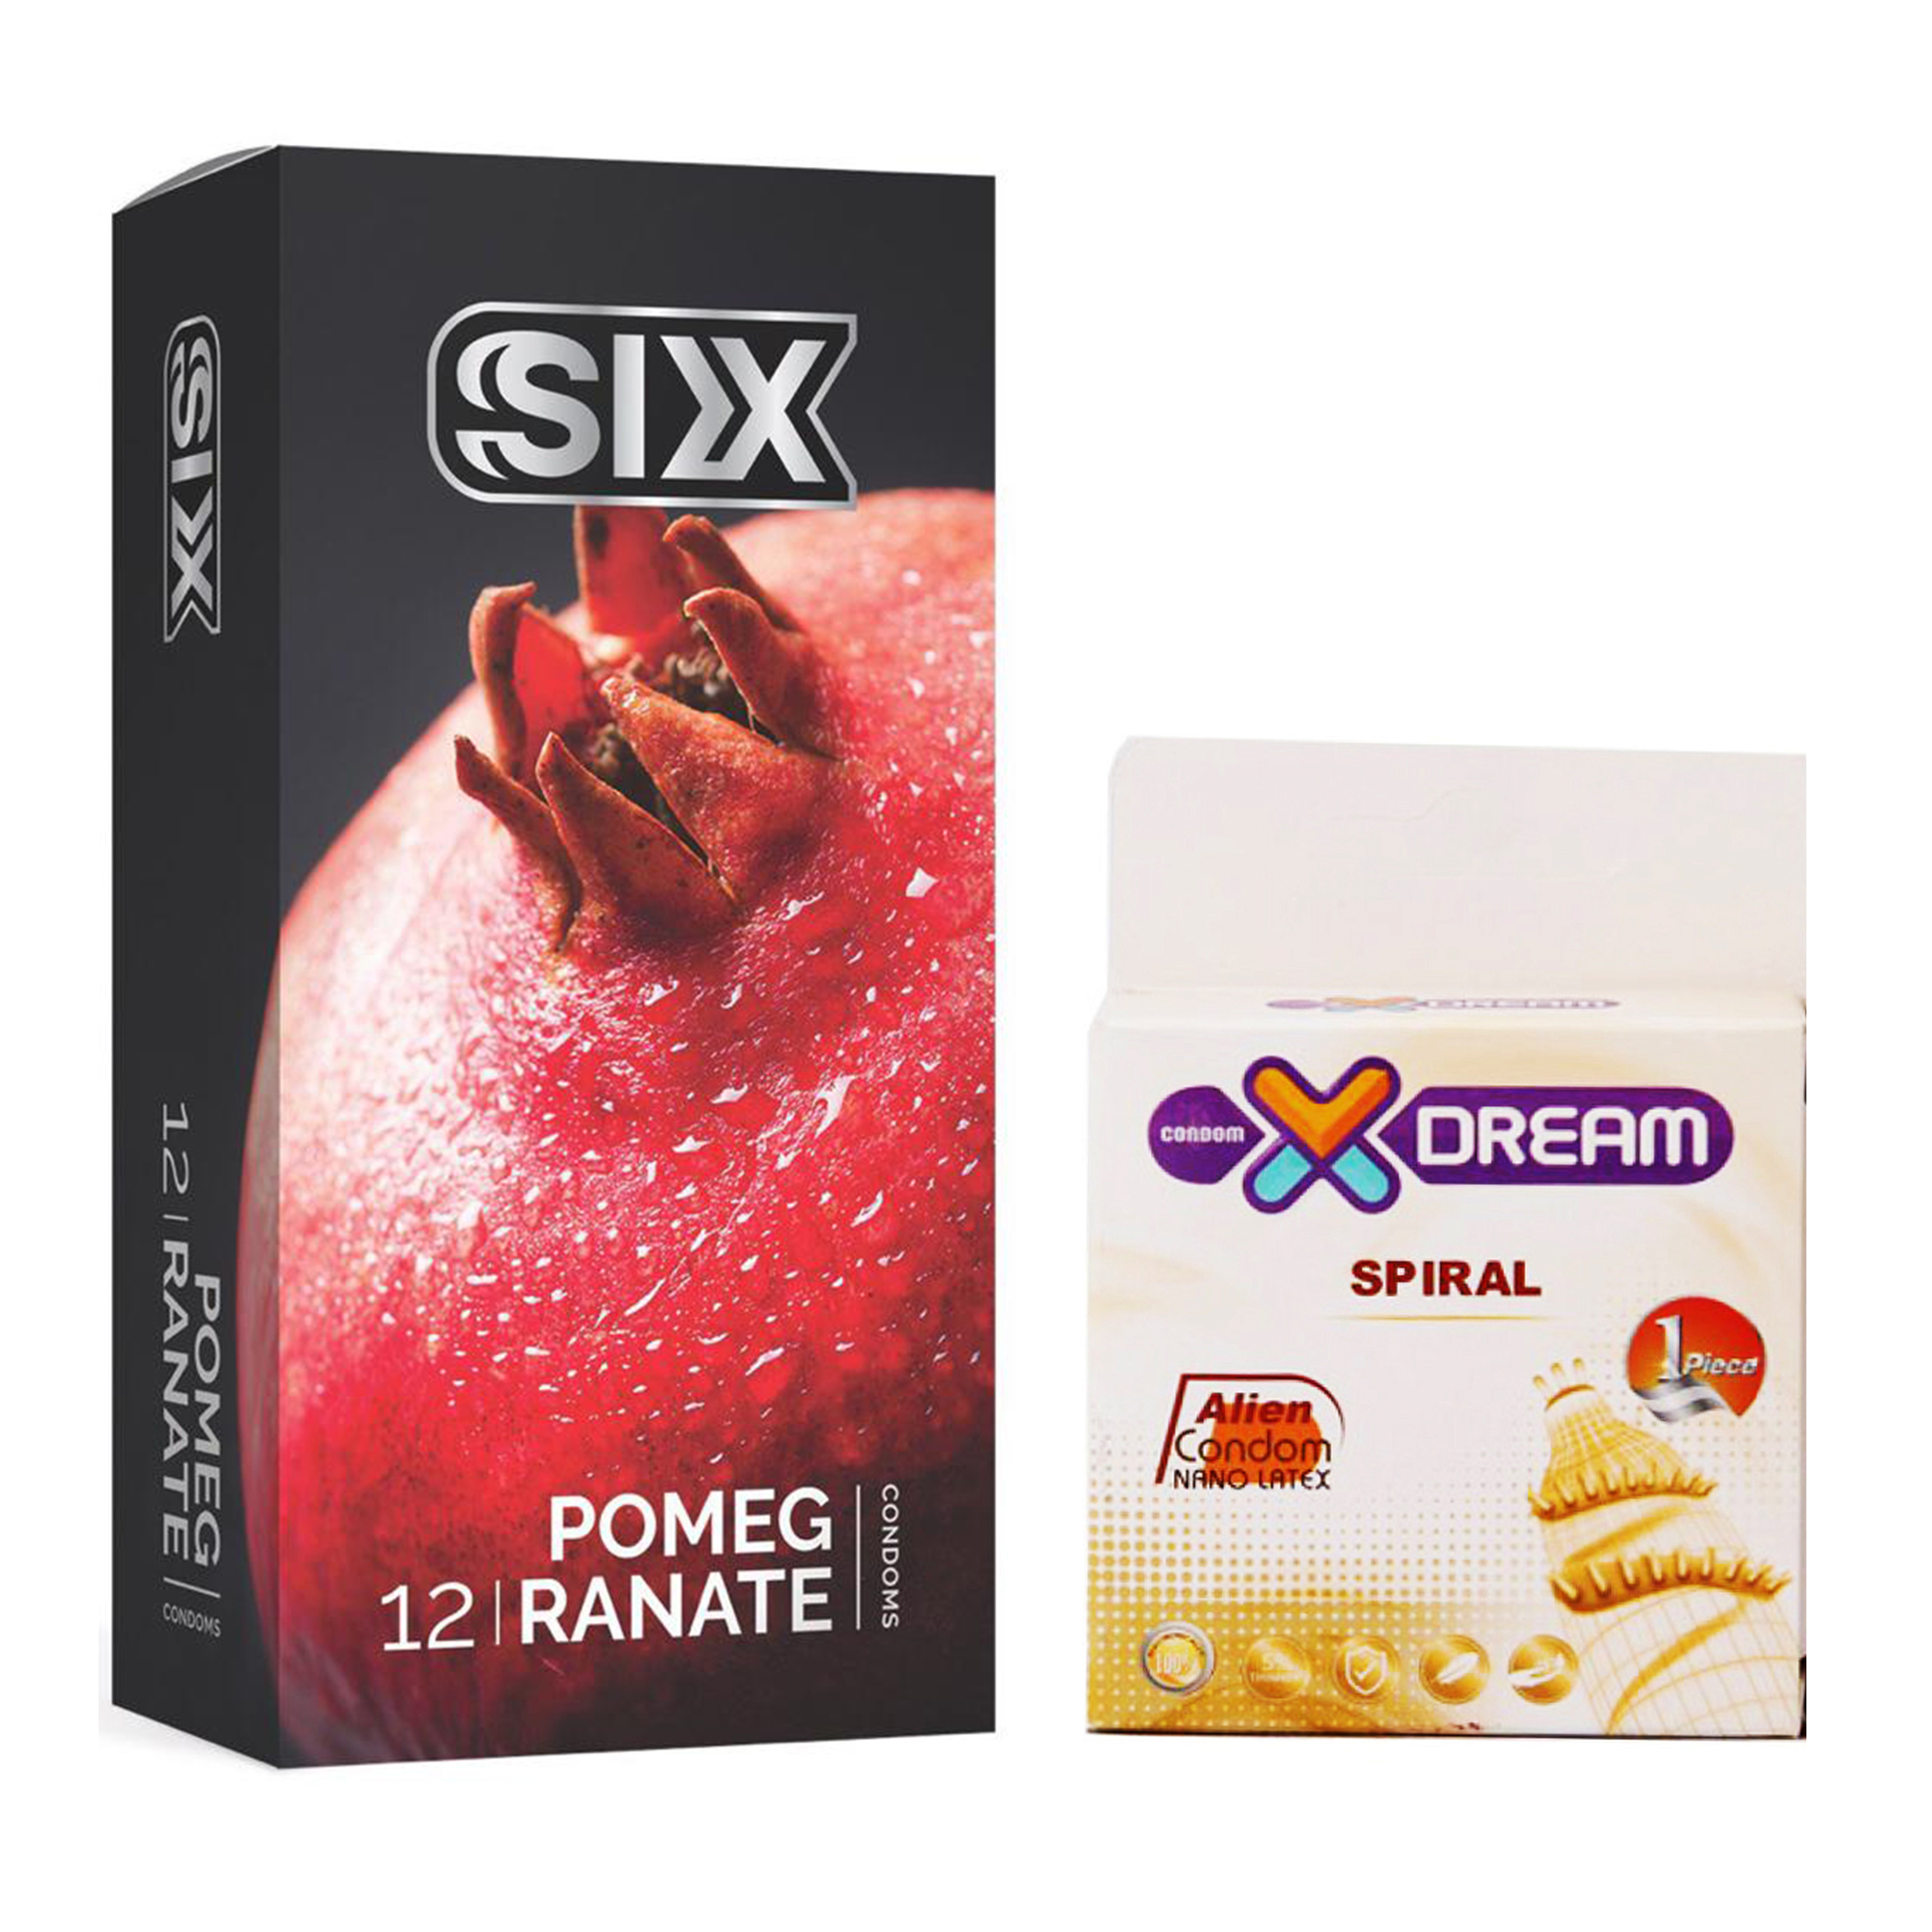 کاندوم سیکس مدل Pomegranate بسته ۱۲ عددی به همراه کاندوم ایکس دریم مدل Spiral